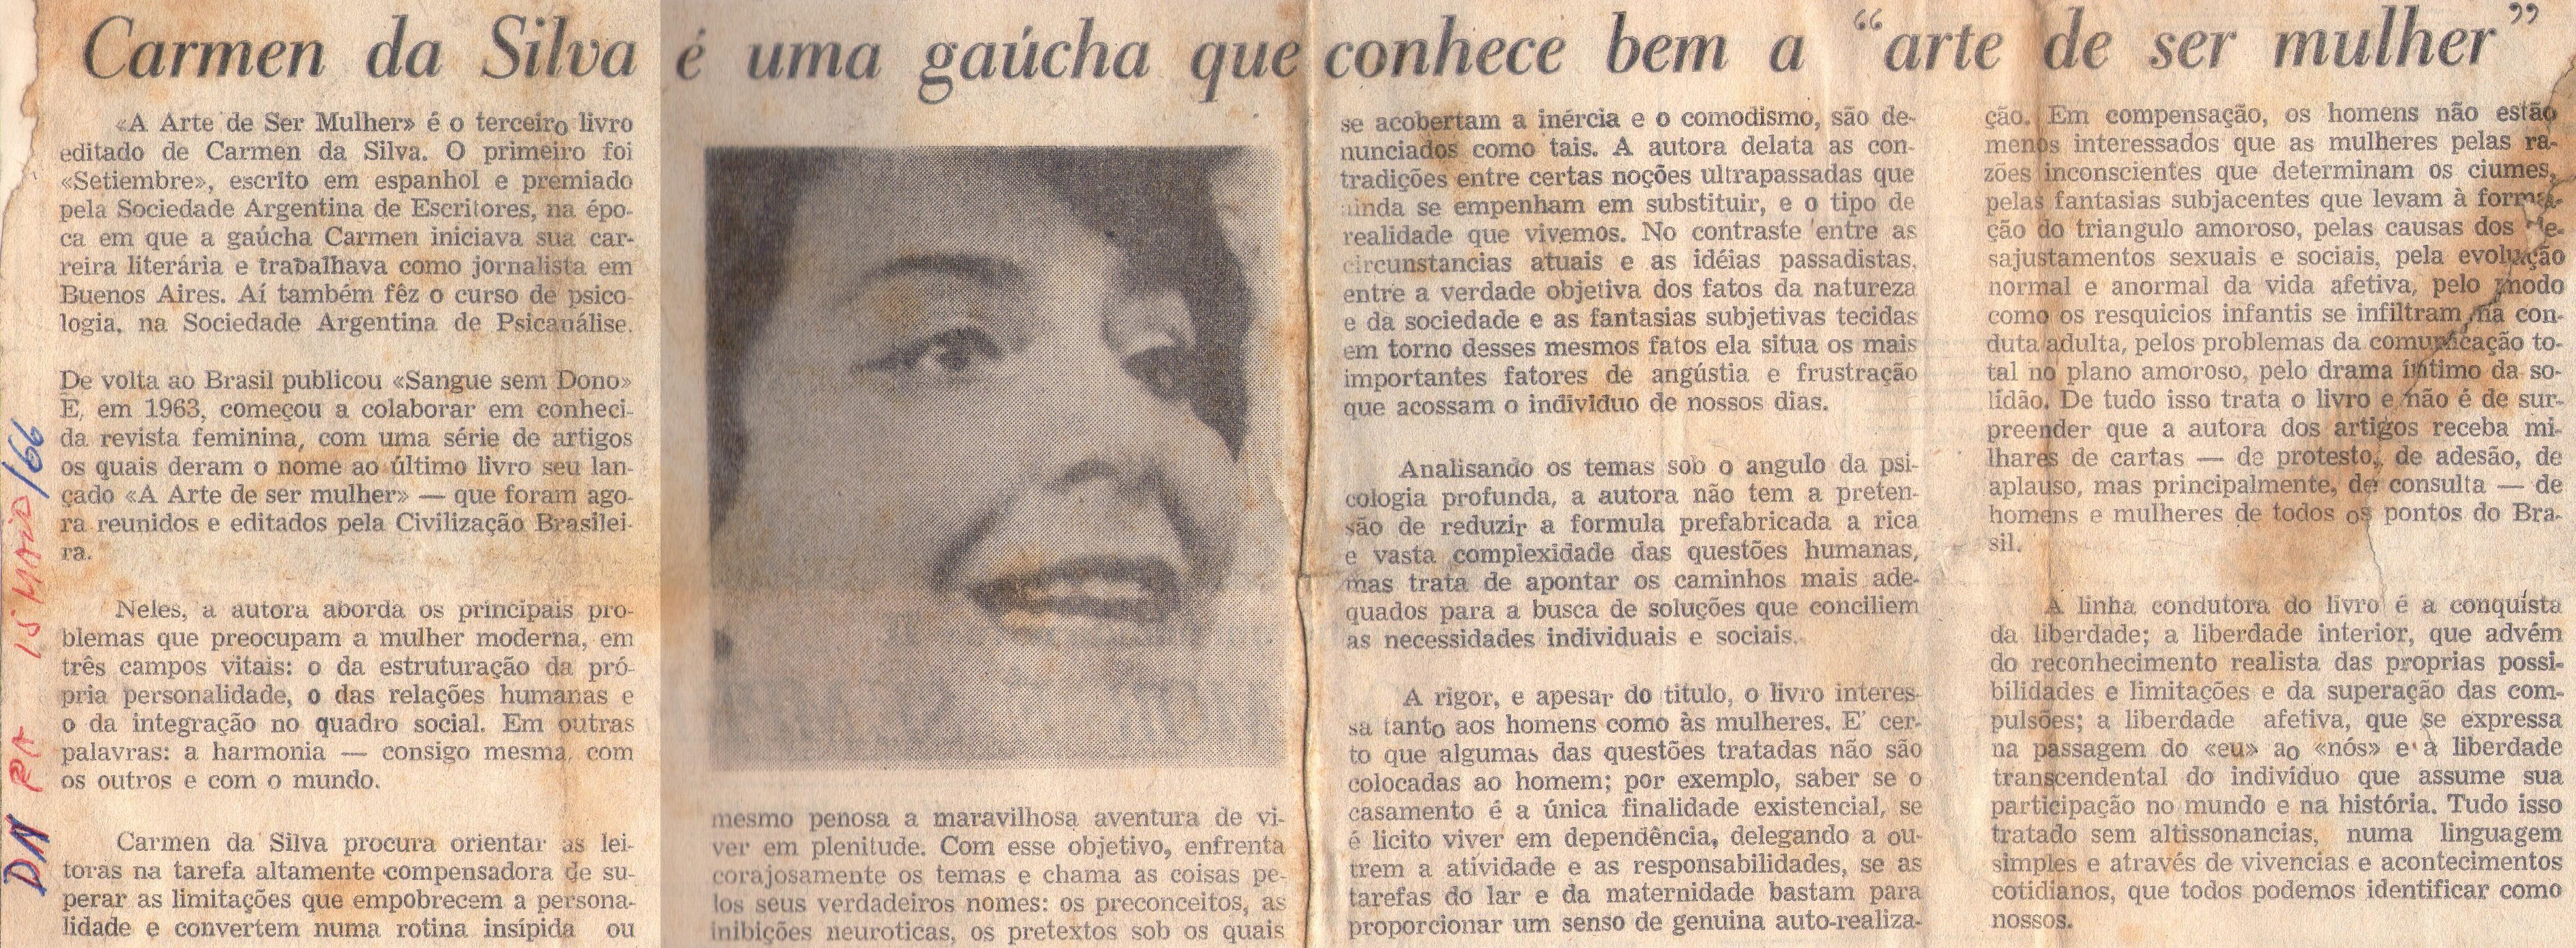 15 de Maio de 1966. Carmen da Silva é uma gaúcha que conhece bem a "arte de ser mulher".